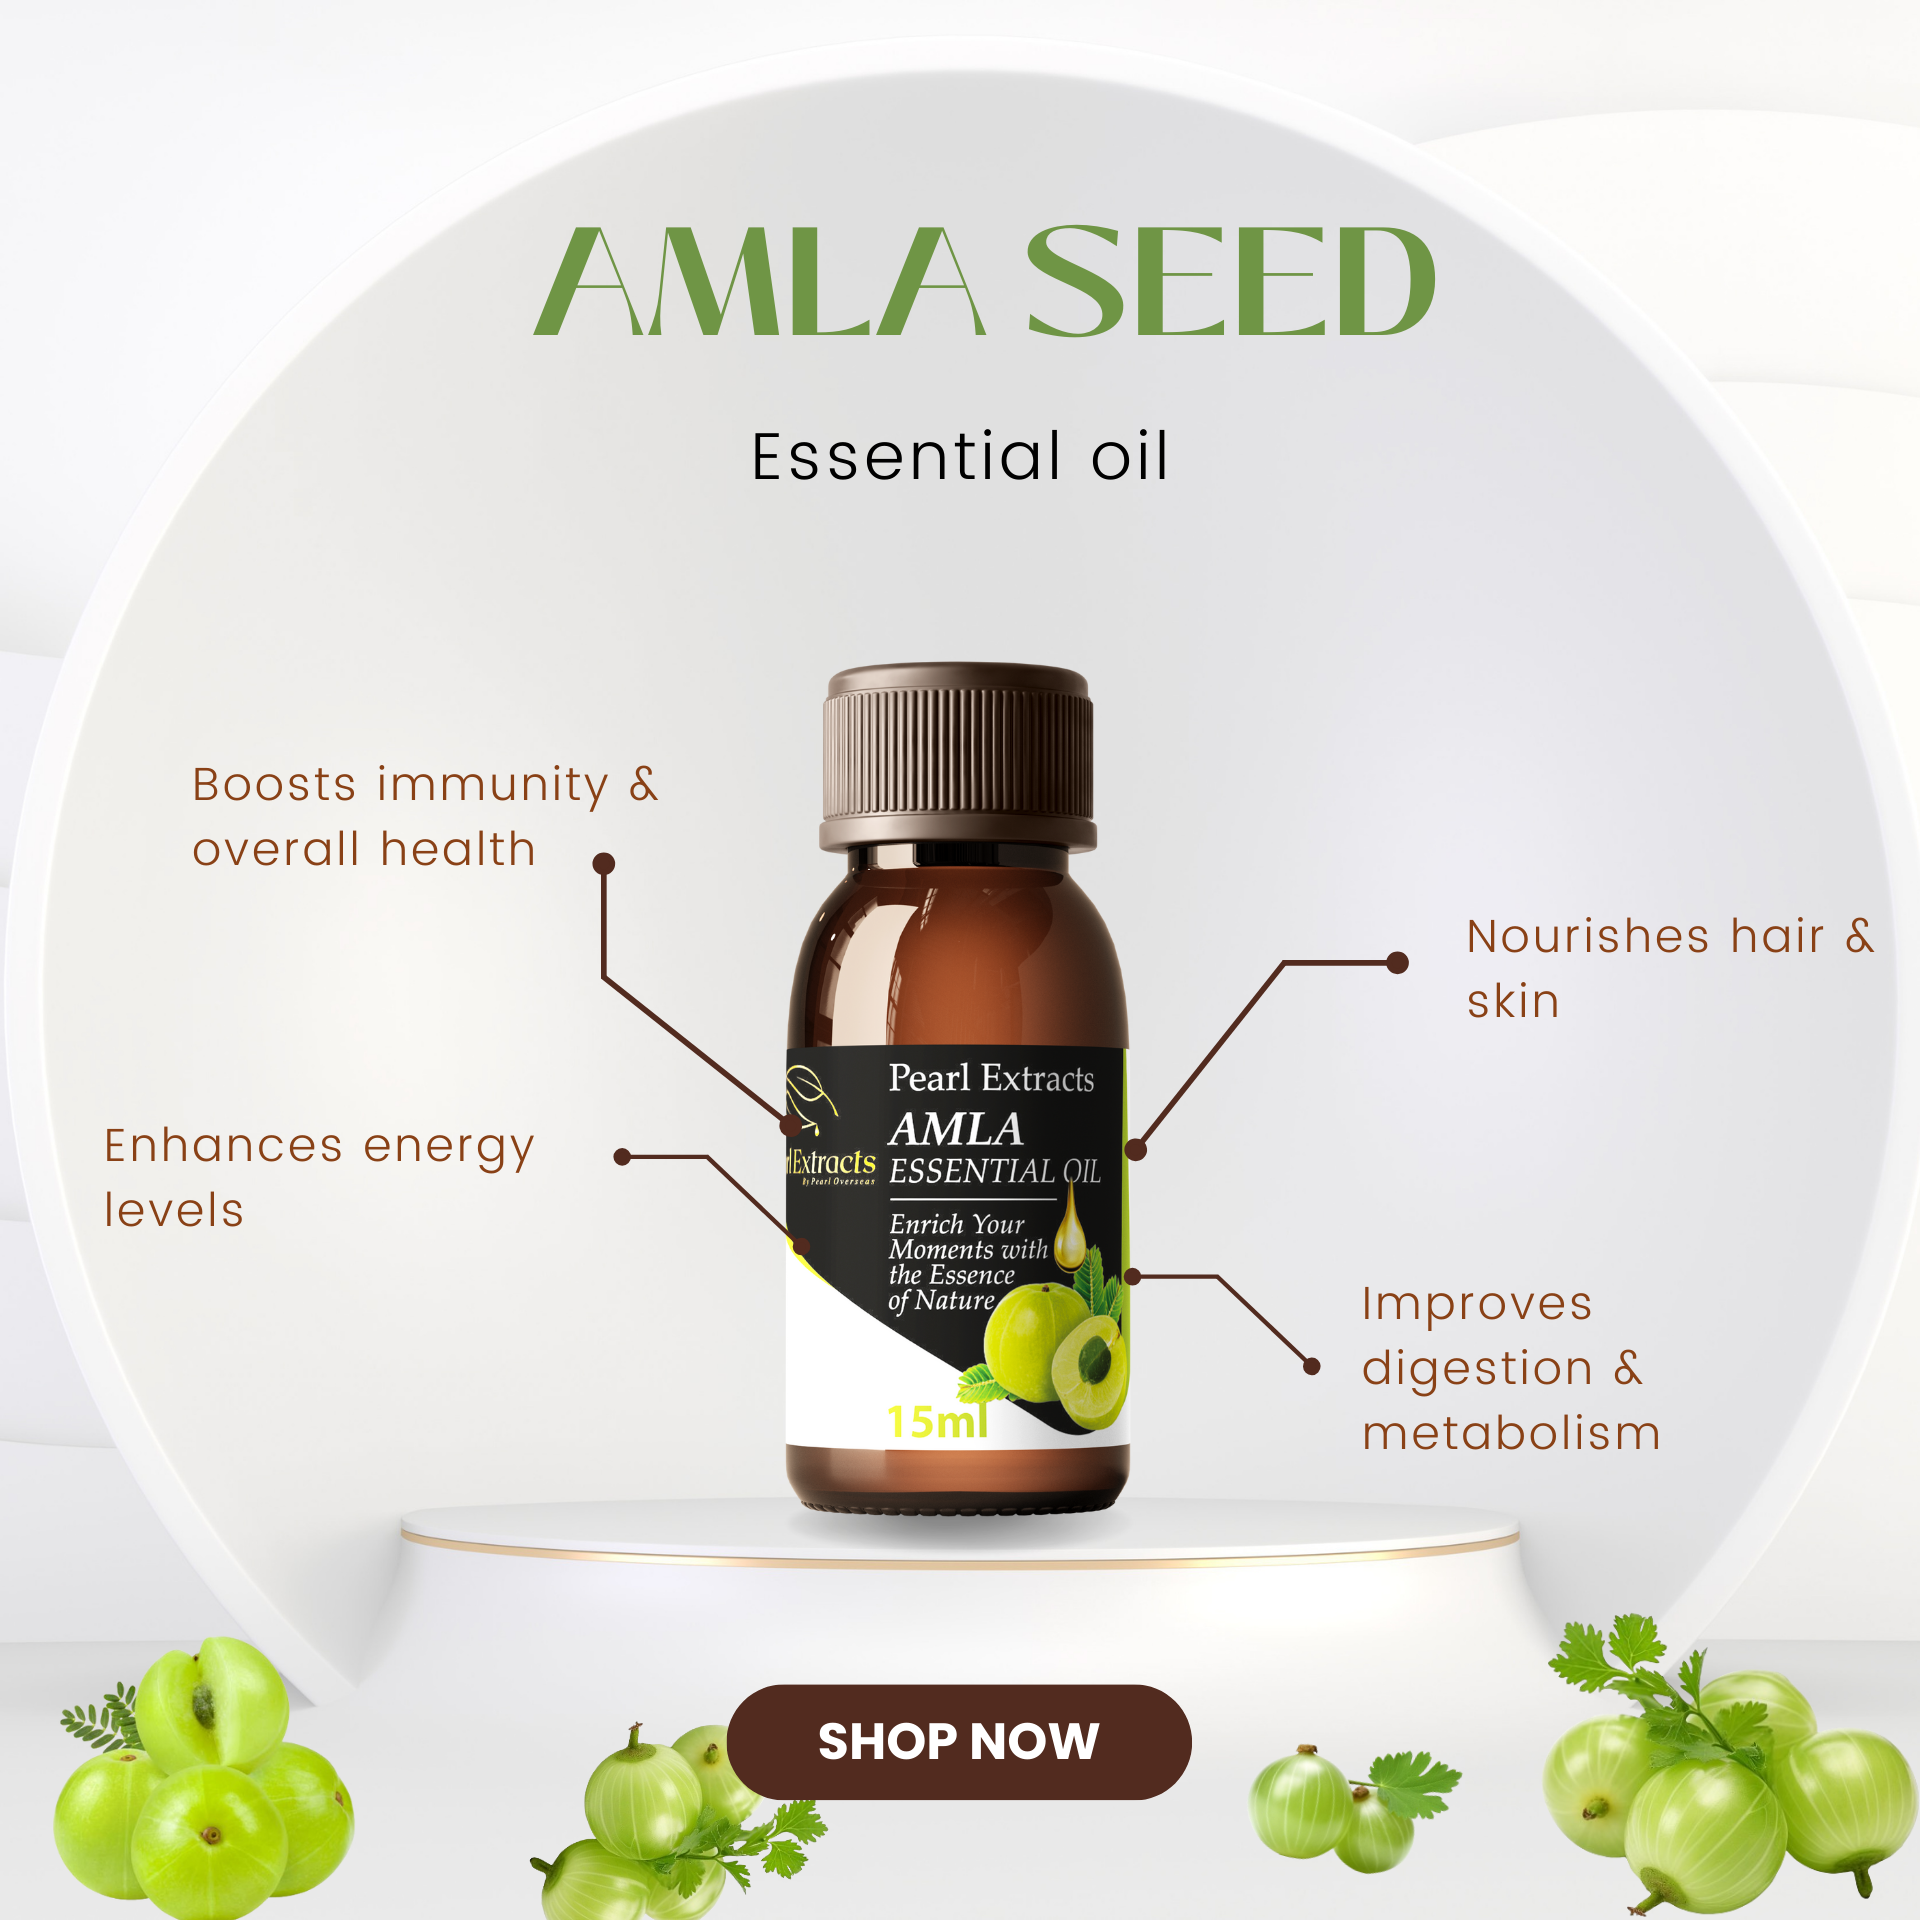 Amla Seed Essential Oil